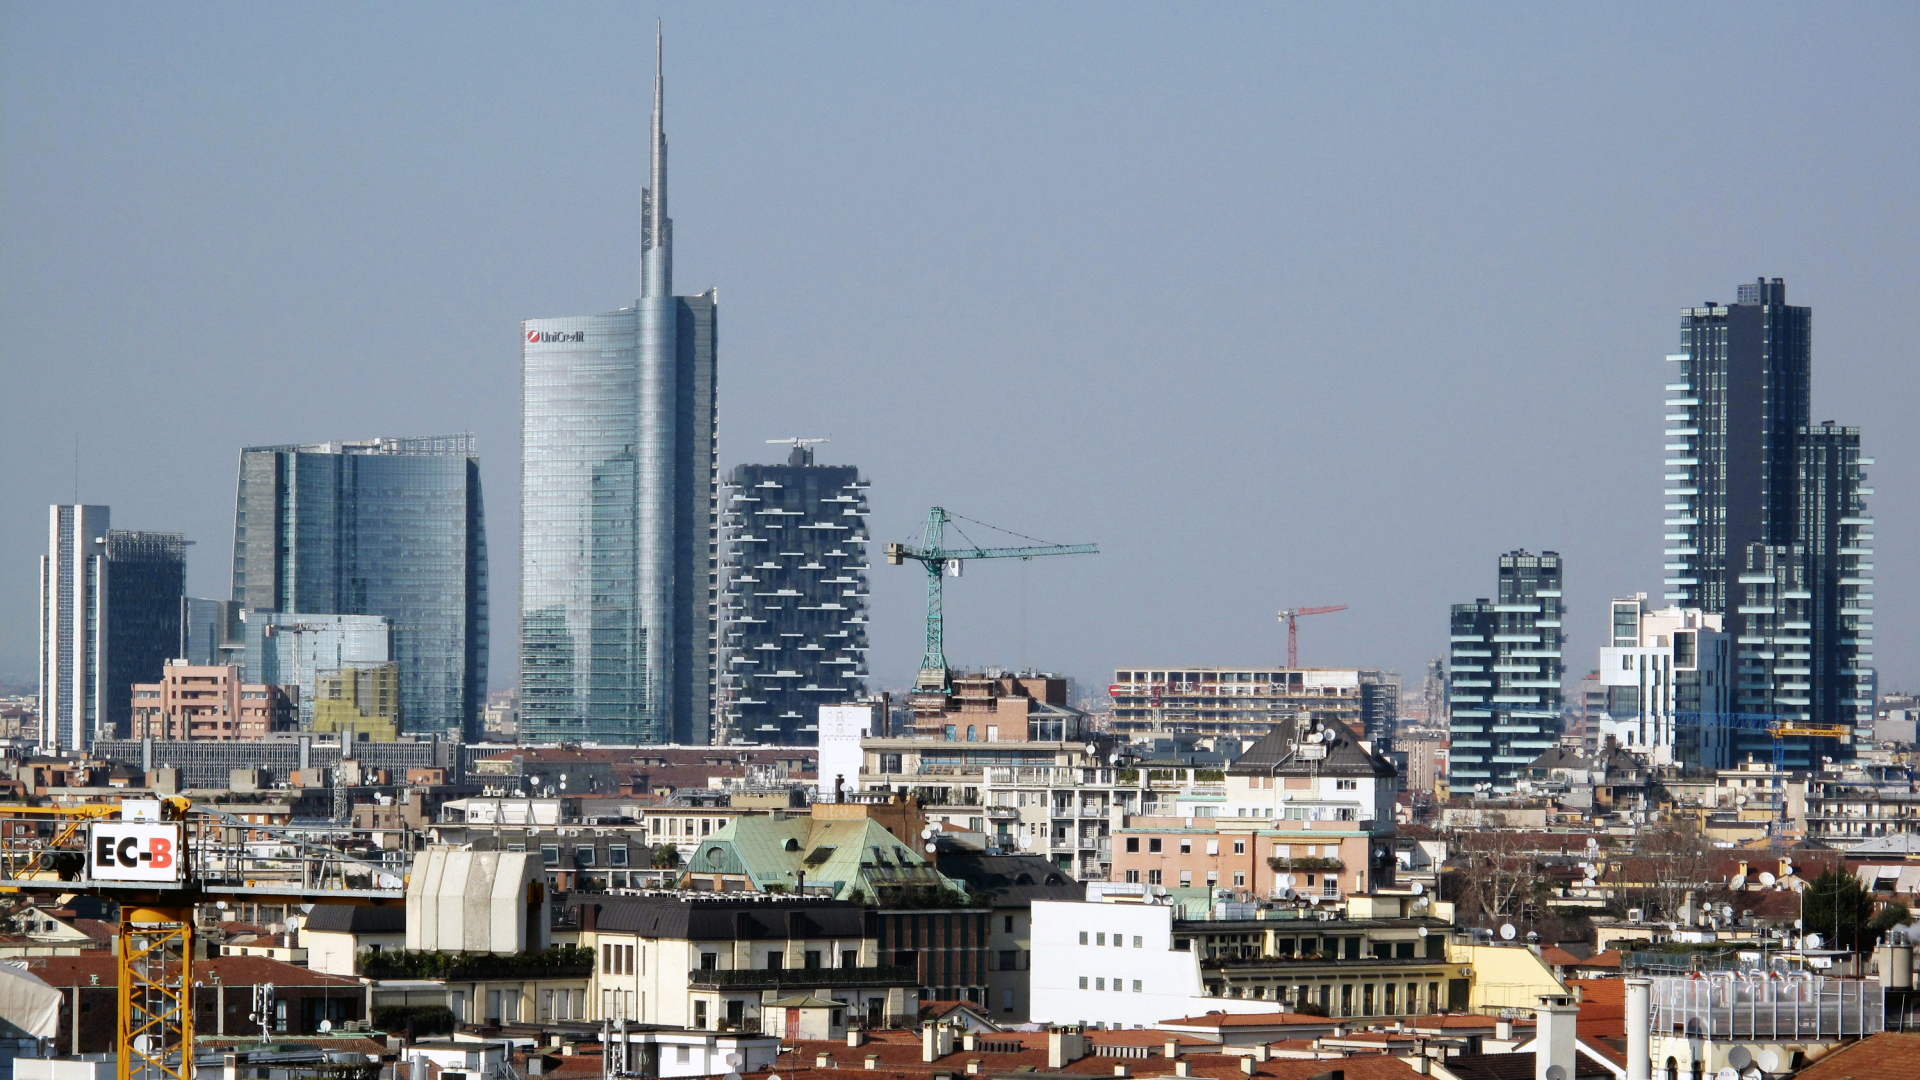 Blick auf Mailand - im höchsten Haus auf der linken Bildseite ist Unicredit untergebracht. | Bildquelle: dpa